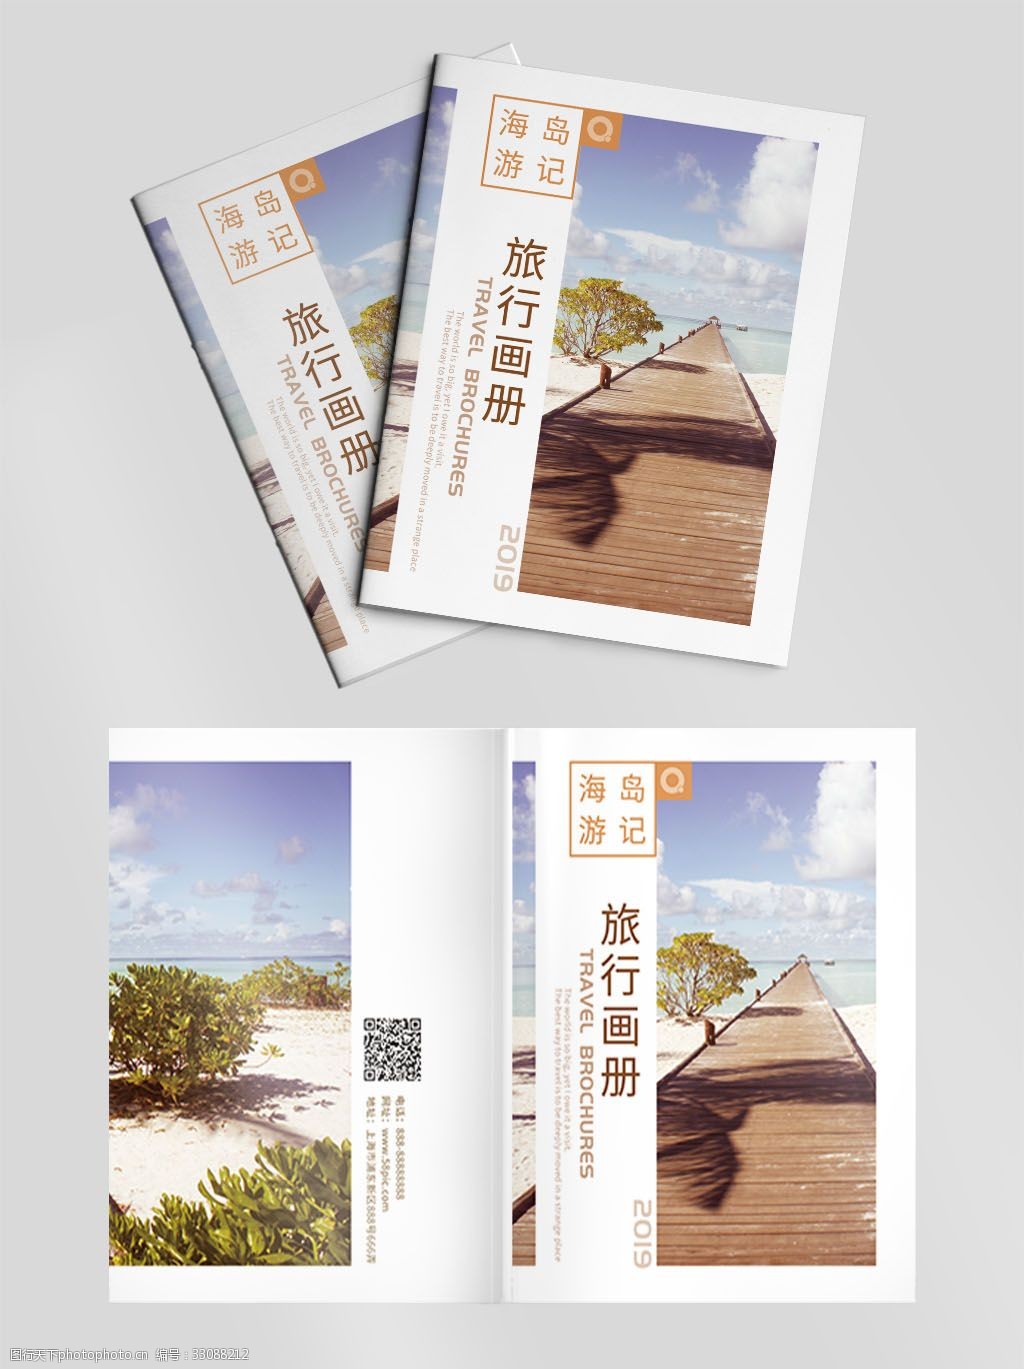 海岛 马尔代夫 海南岛 游记 旅行 旅游 宣传册 画册